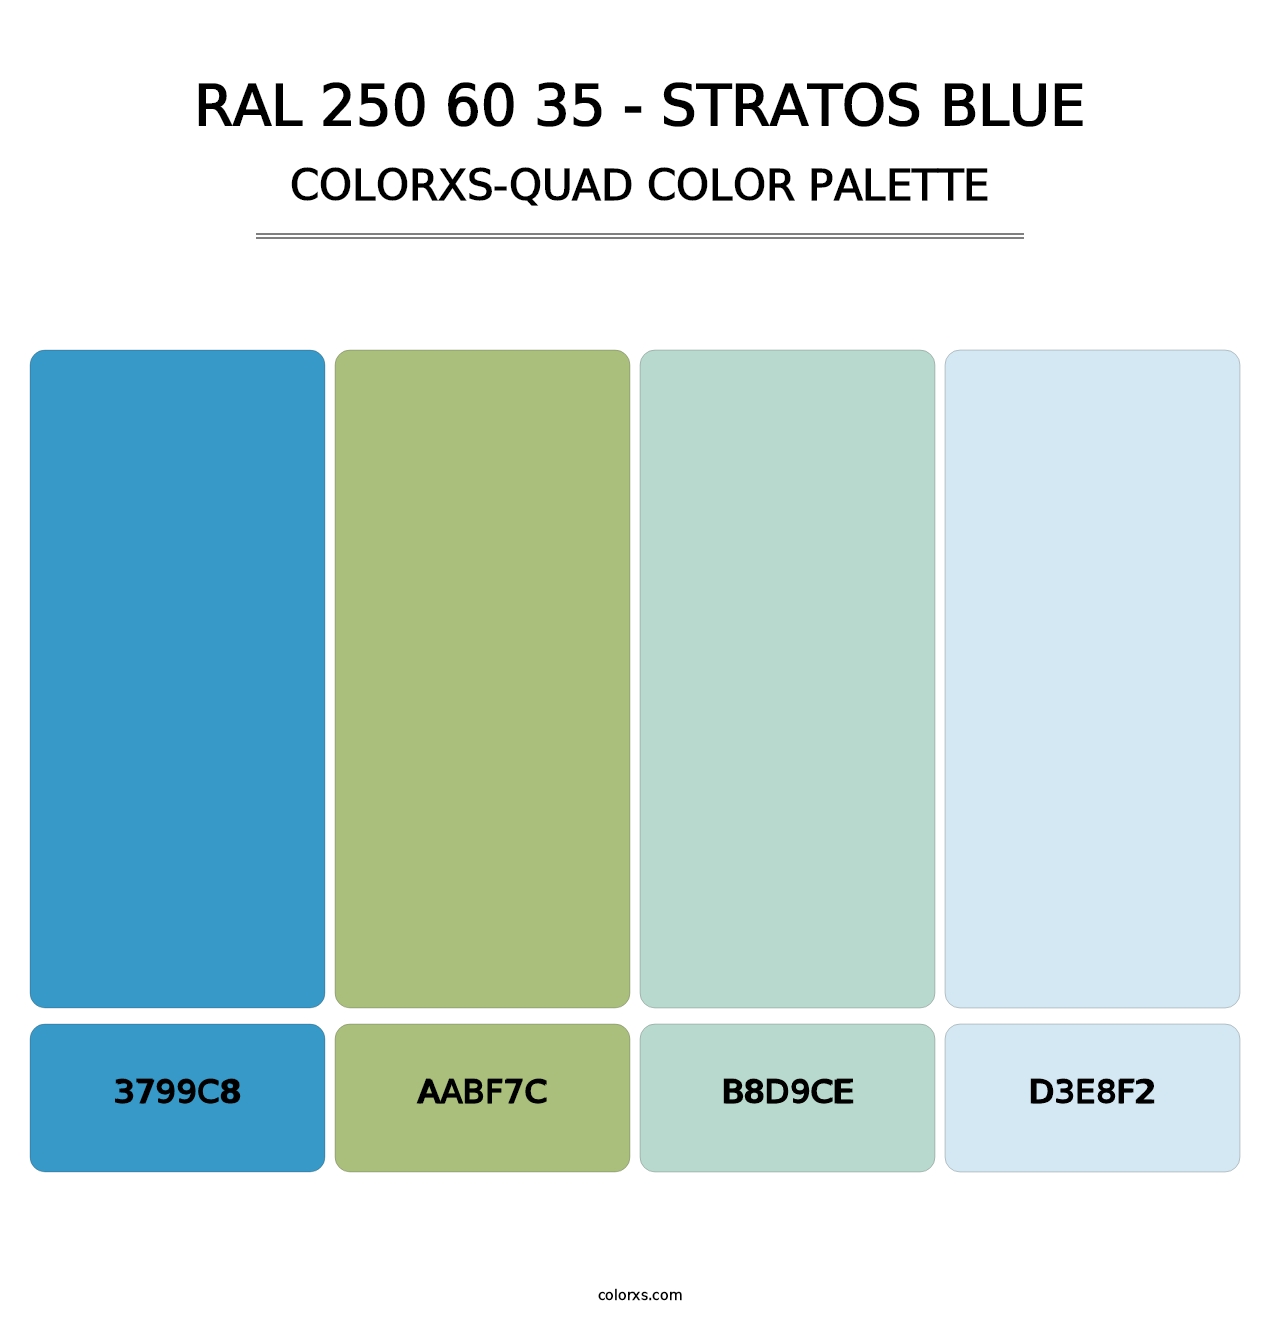 RAL 250 60 35 - Stratos Blue - Colorxs Quad Palette